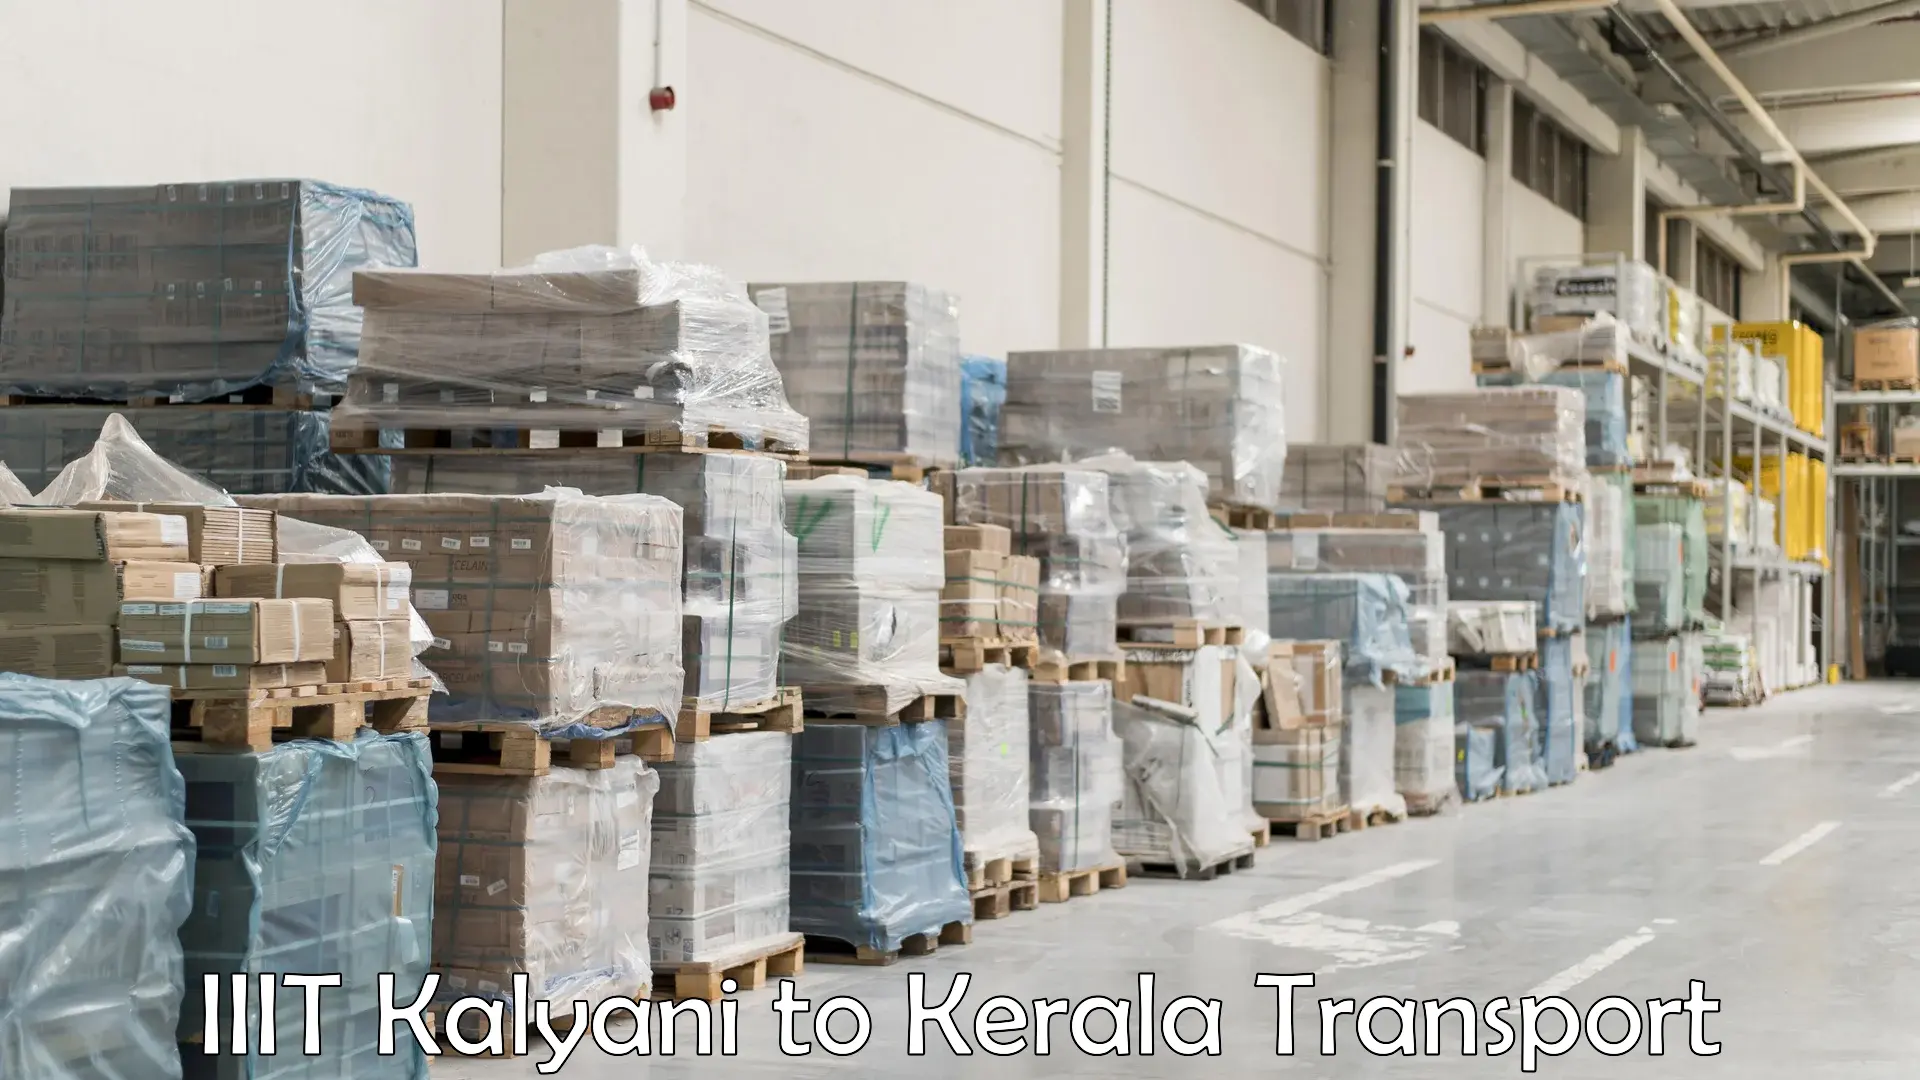 Interstate transport services IIIT Kalyani to Aluva